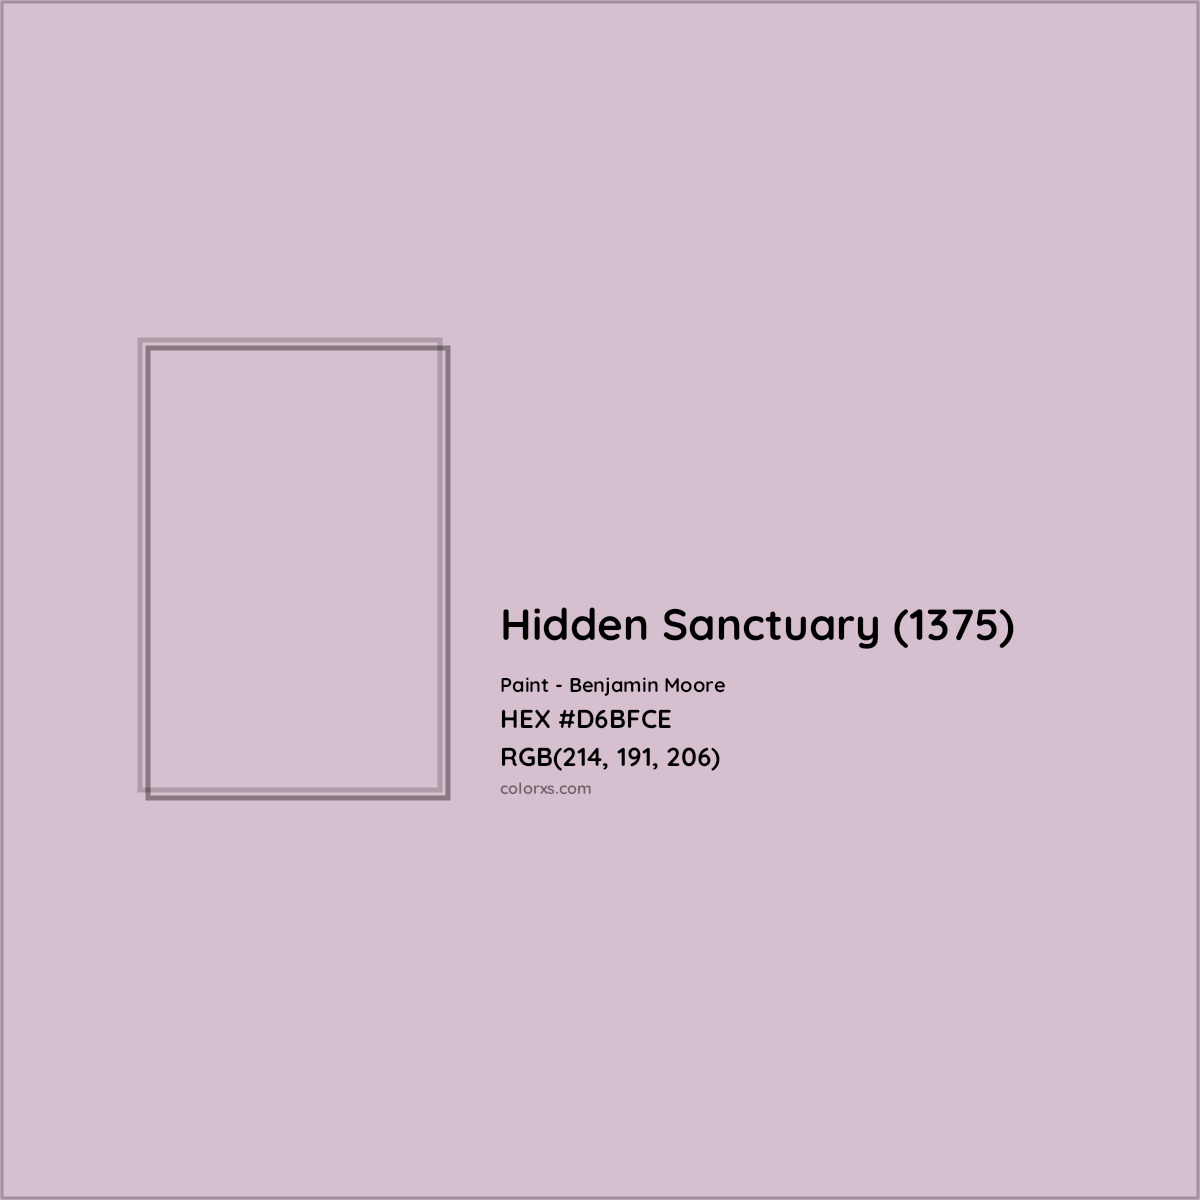 HEX #D6BFCE Hidden Sanctuary (1375) Paint Benjamin Moore - Color Code